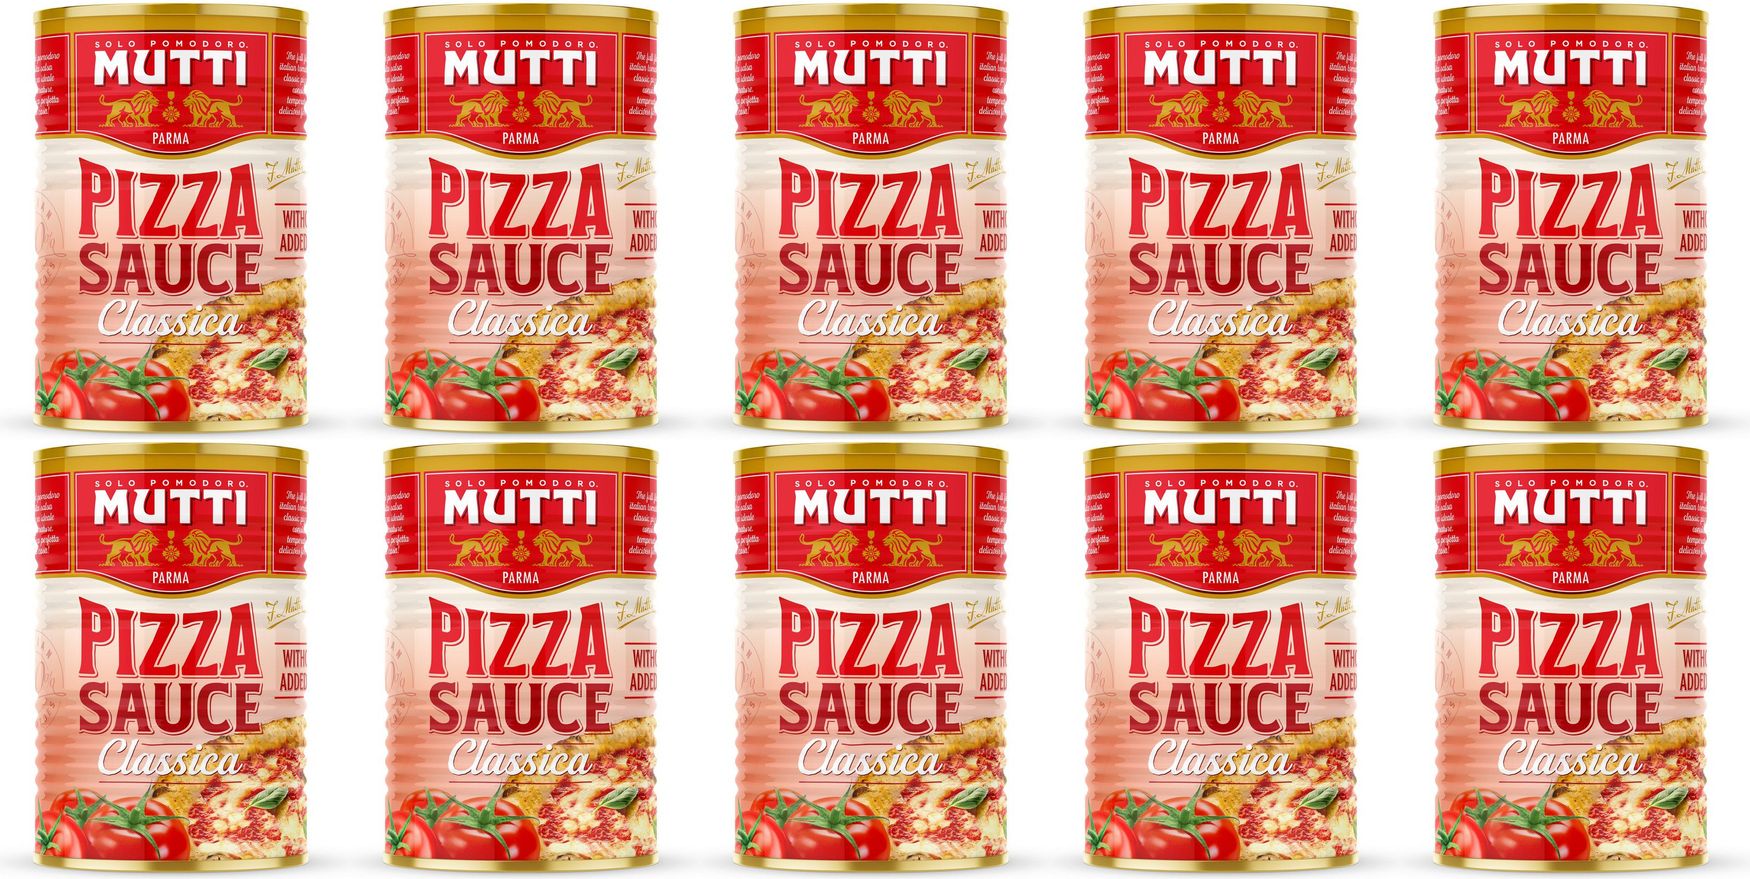 mutti томатный соус для пиццы ароматизированный фото 89